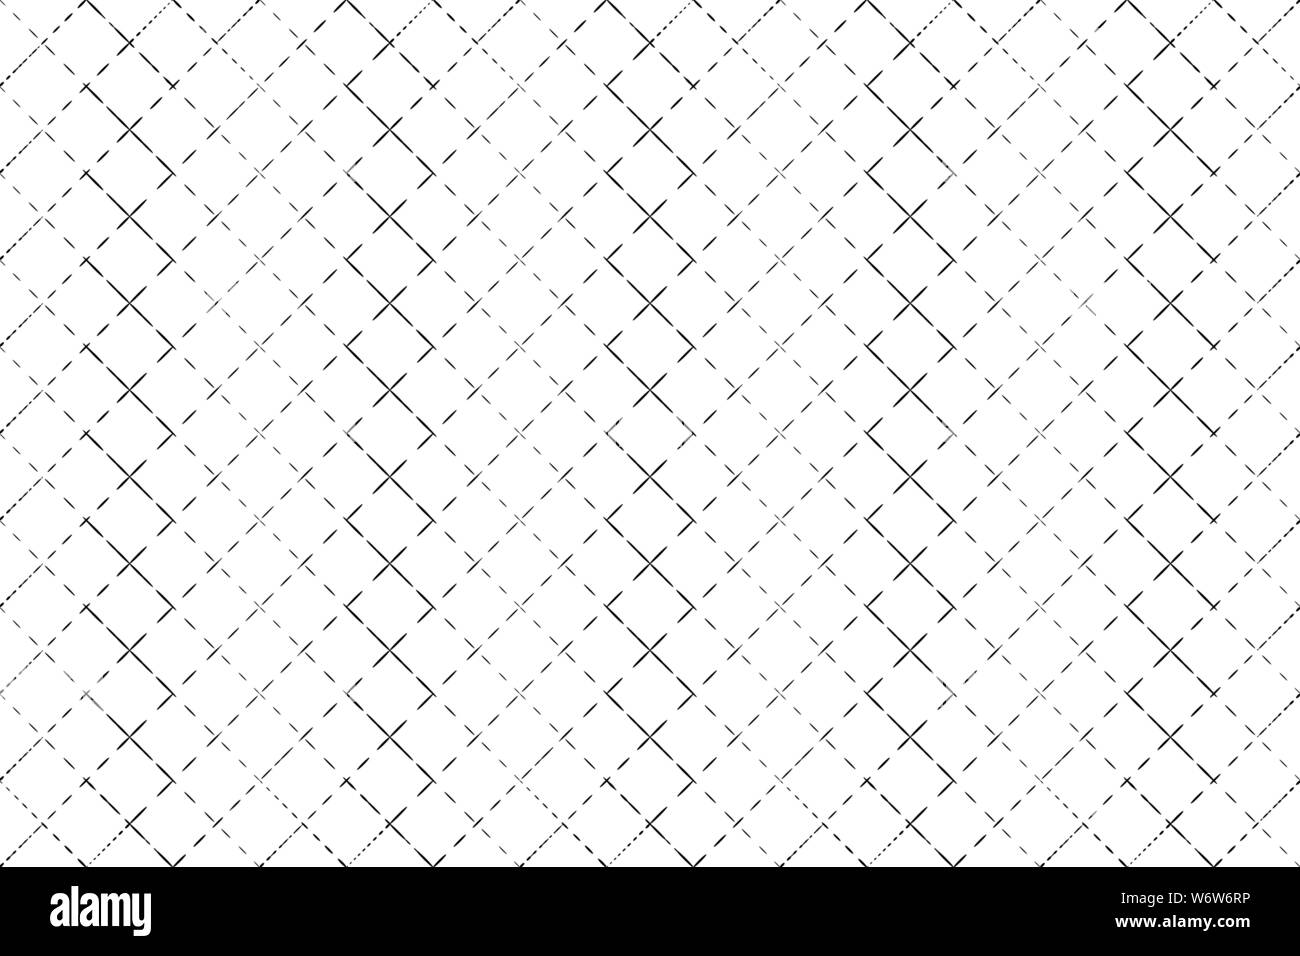 Abstract pattern grille noire avec les lignes en pointillé sur fond blanc vector illustration Illustration de Vecteur